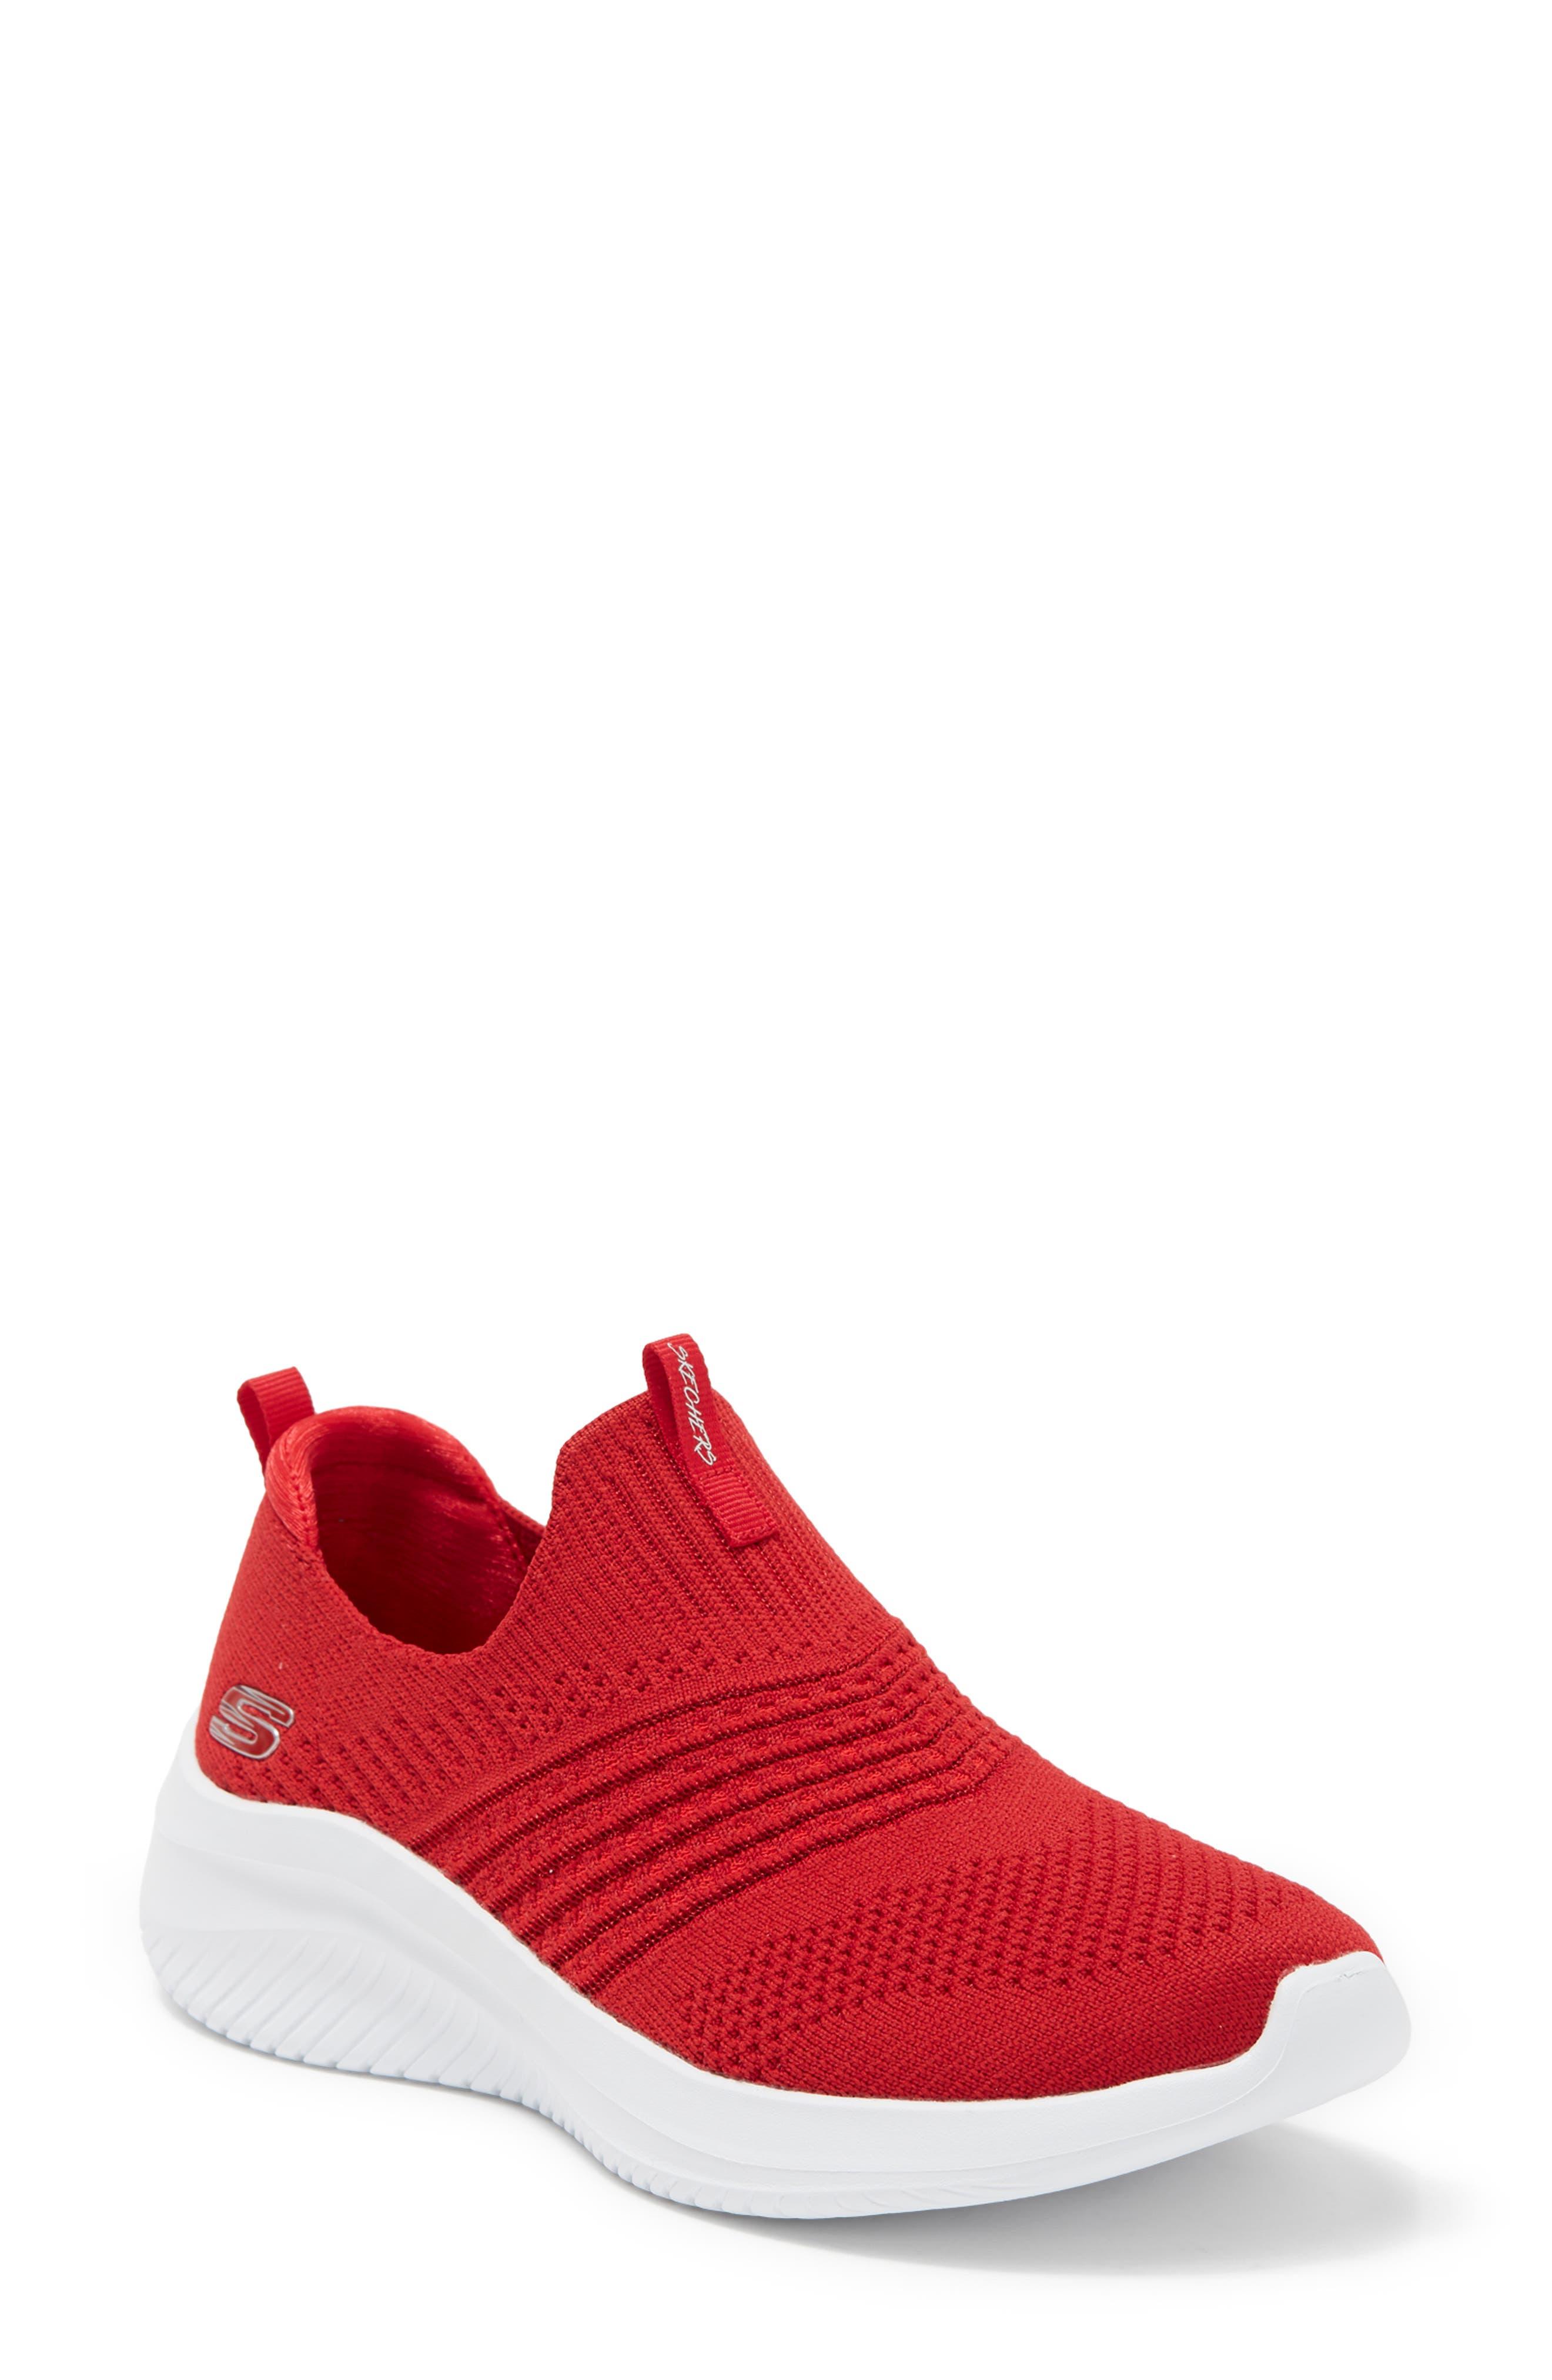 Skechers Ultra Flex 3.0 Classy Charm Sneaker in Red | Lyst